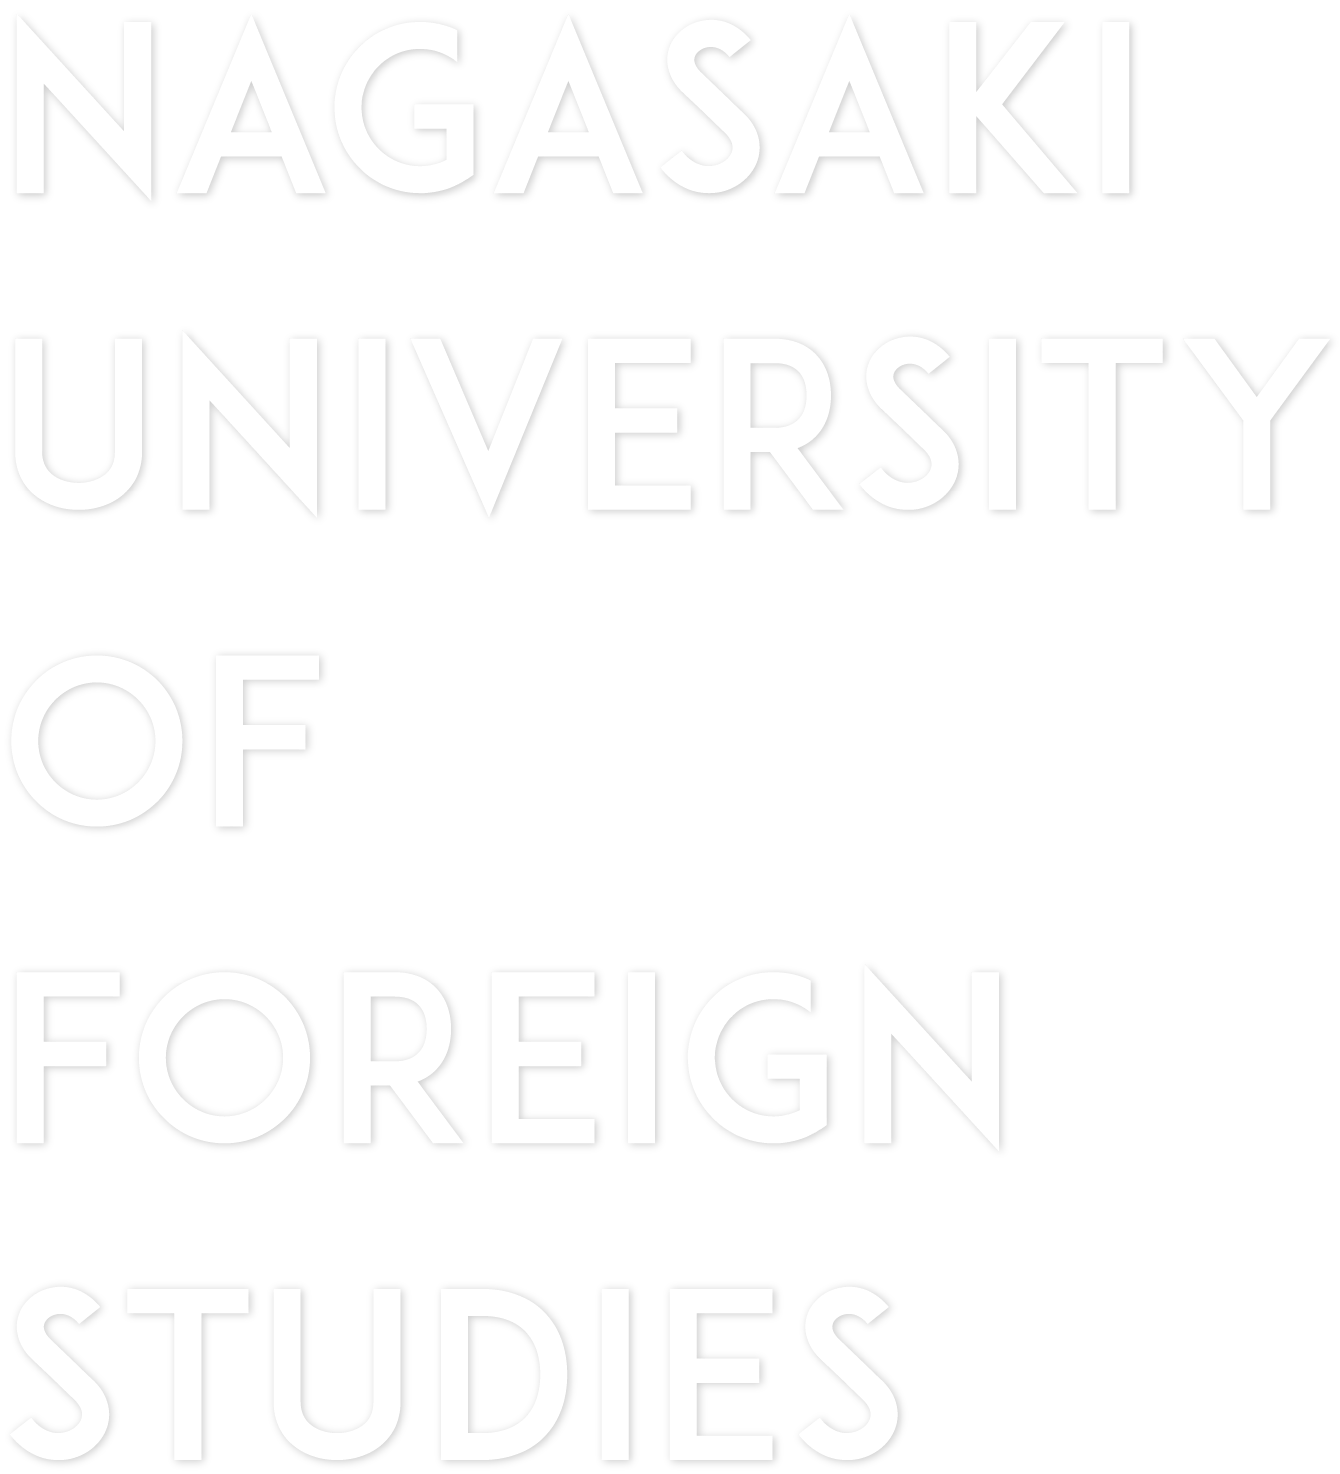 NAGASAKI UNIVERSITY OF FOREIGN STUDIES